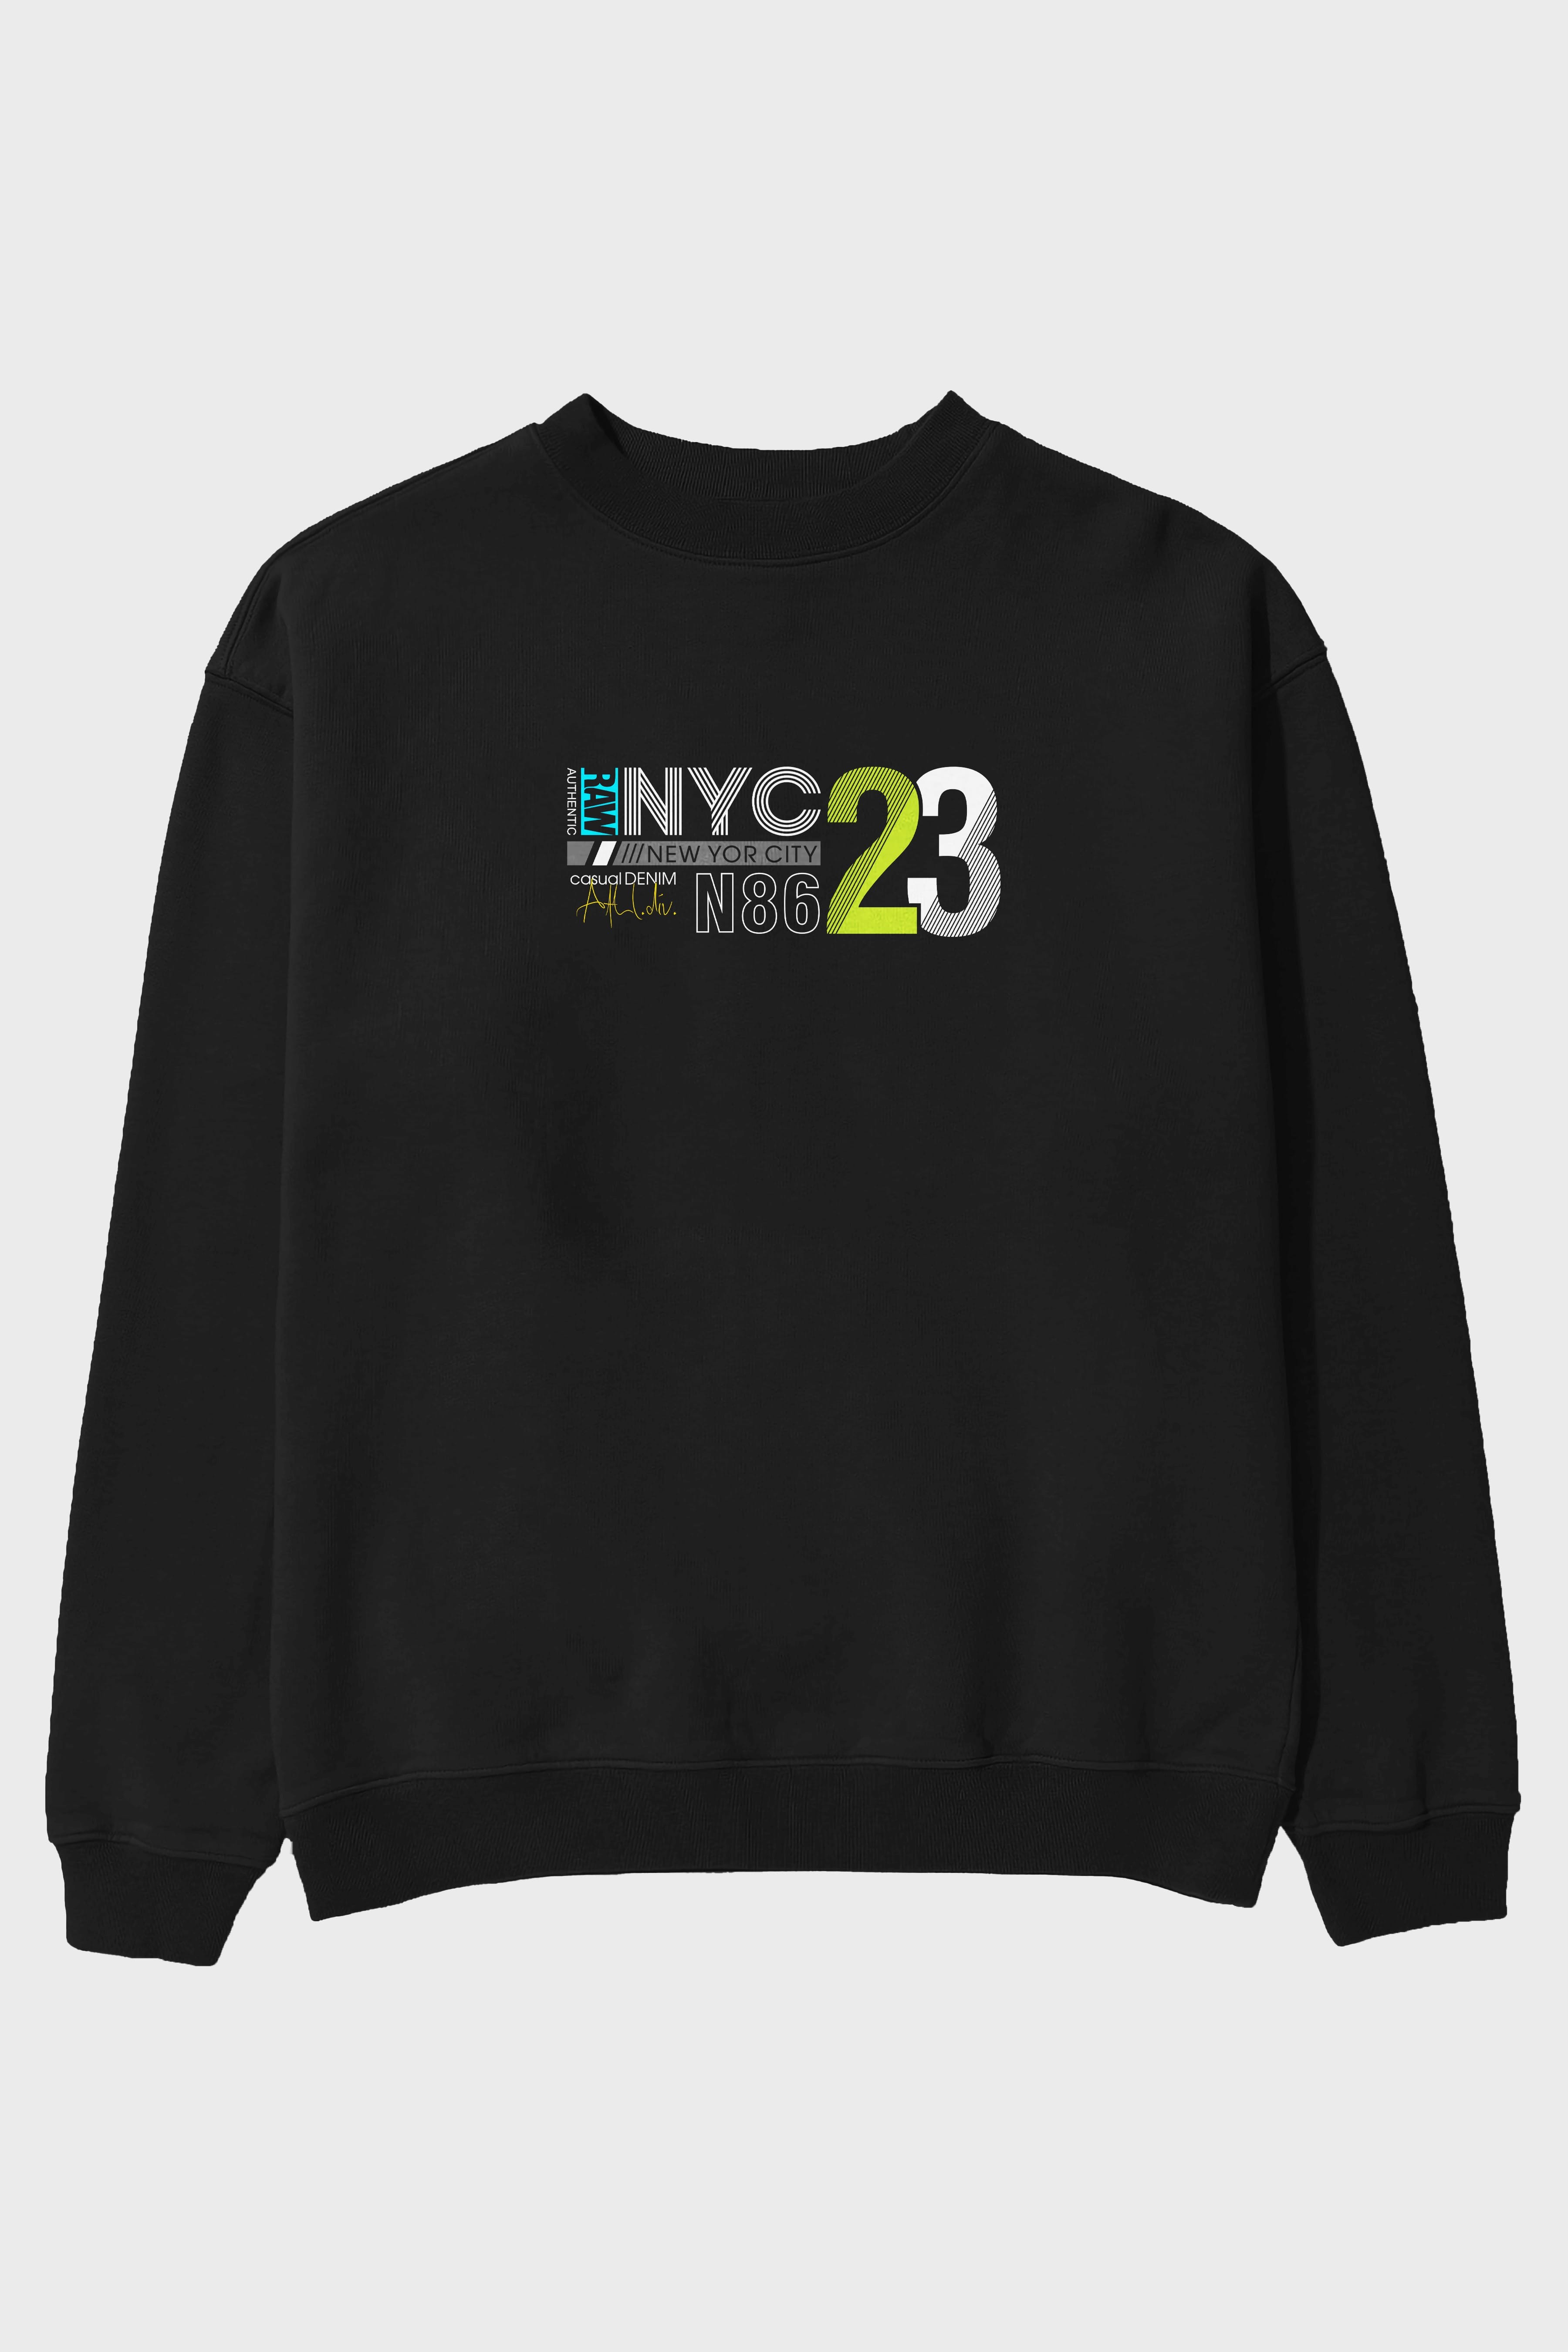 NYC 23 Ön Baskılı Oversize Sweatshirt Erkek Kadın Unisex